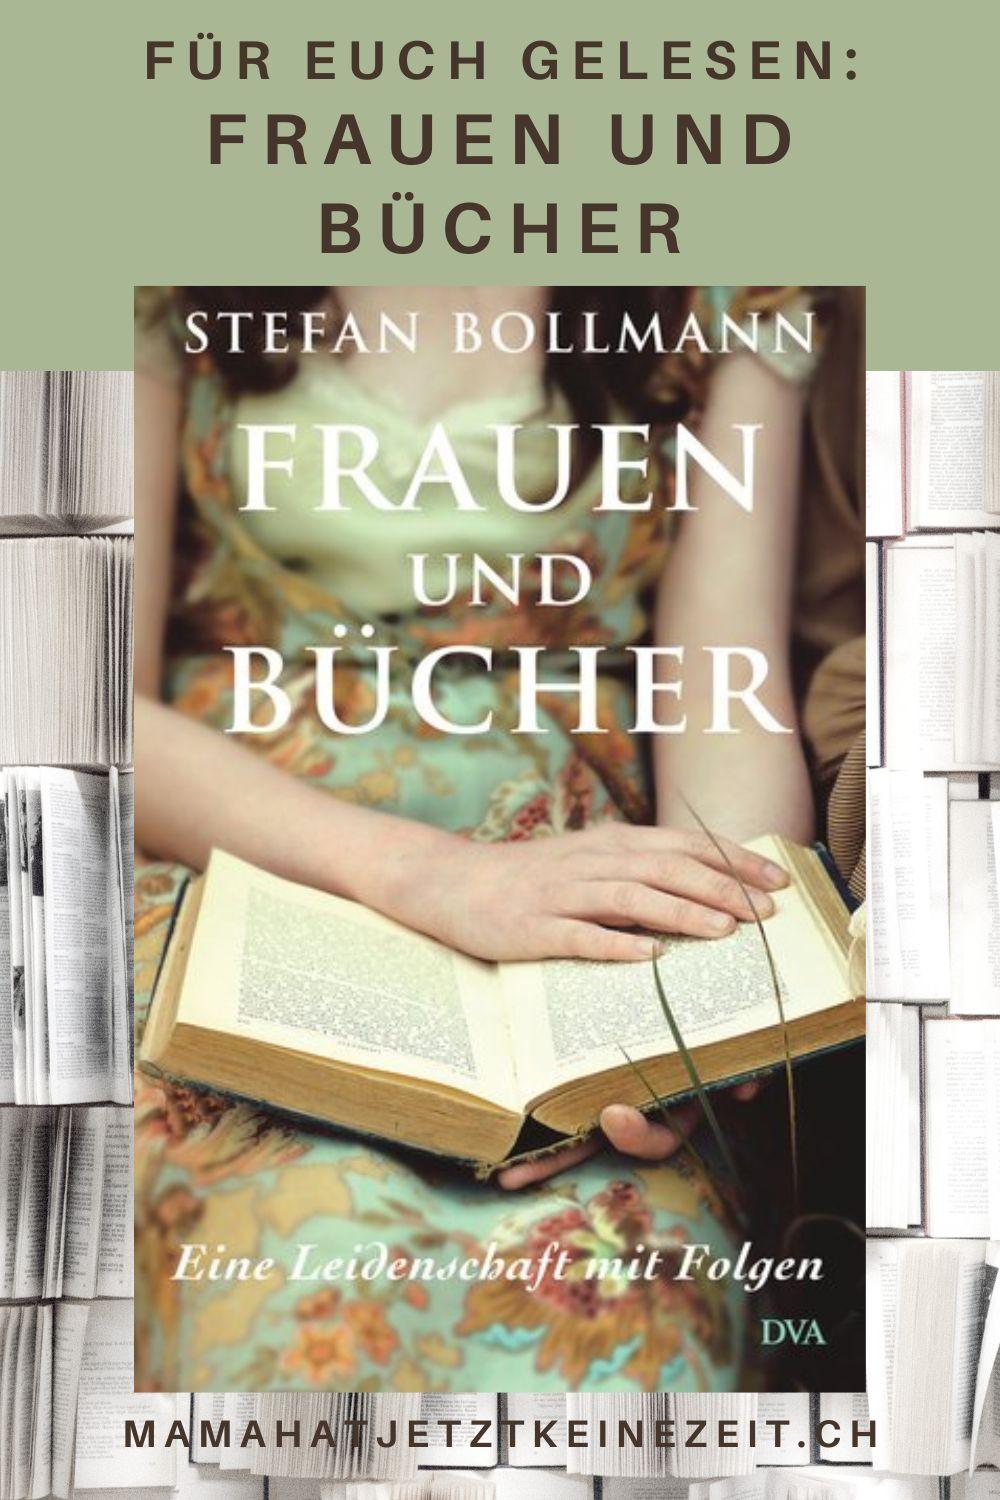 Stefan Bollmann: „Frauen und Bücher“